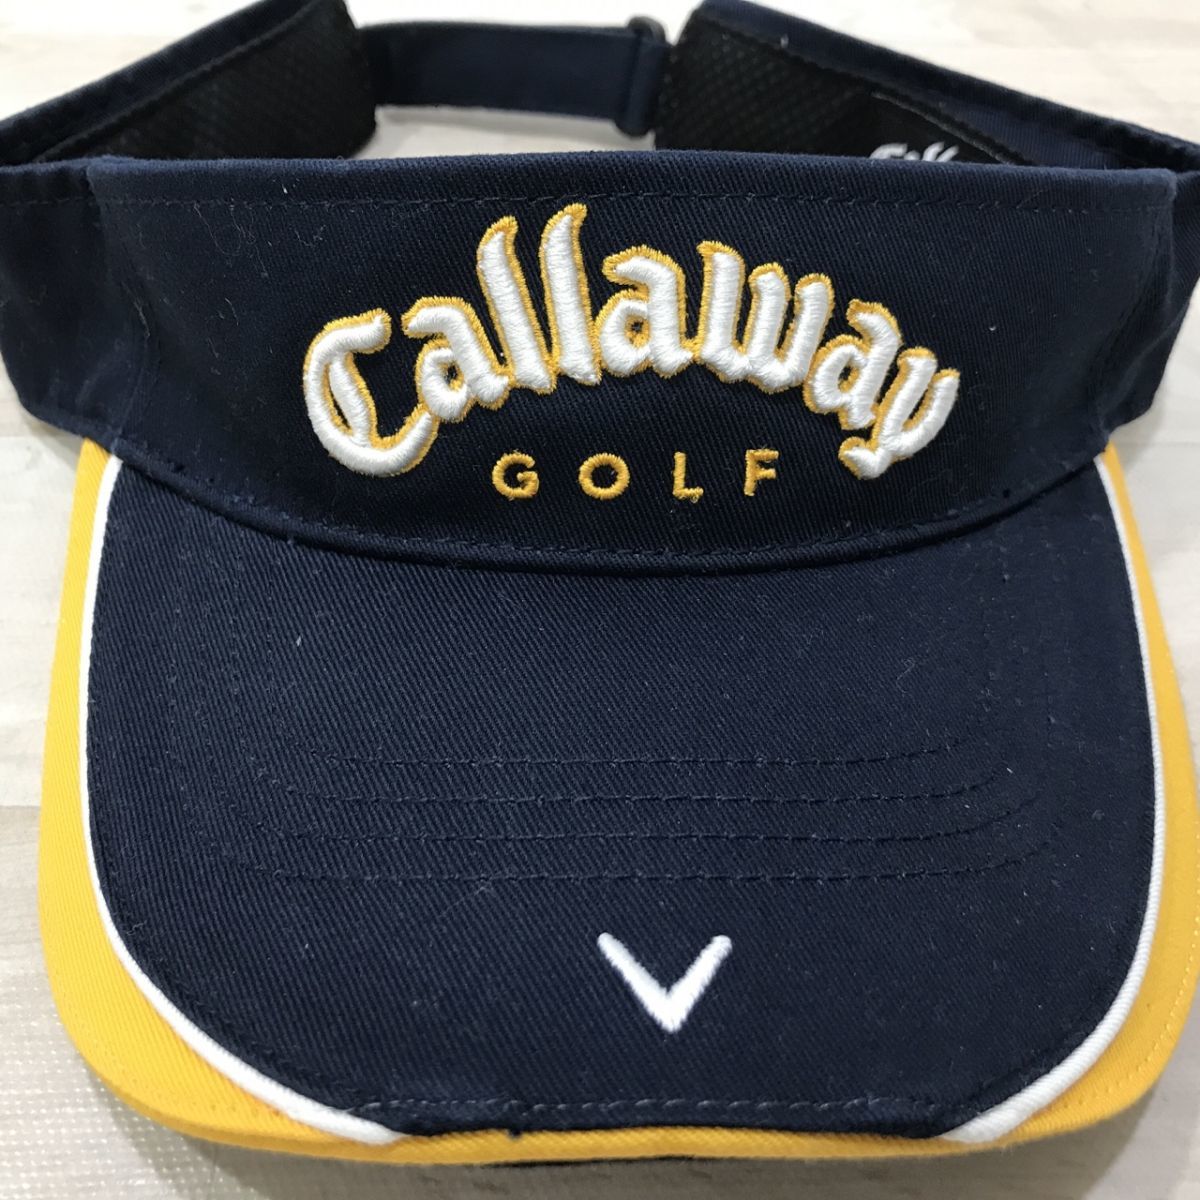 Callaway Callaway Golf козырек свободный размер [C0469]